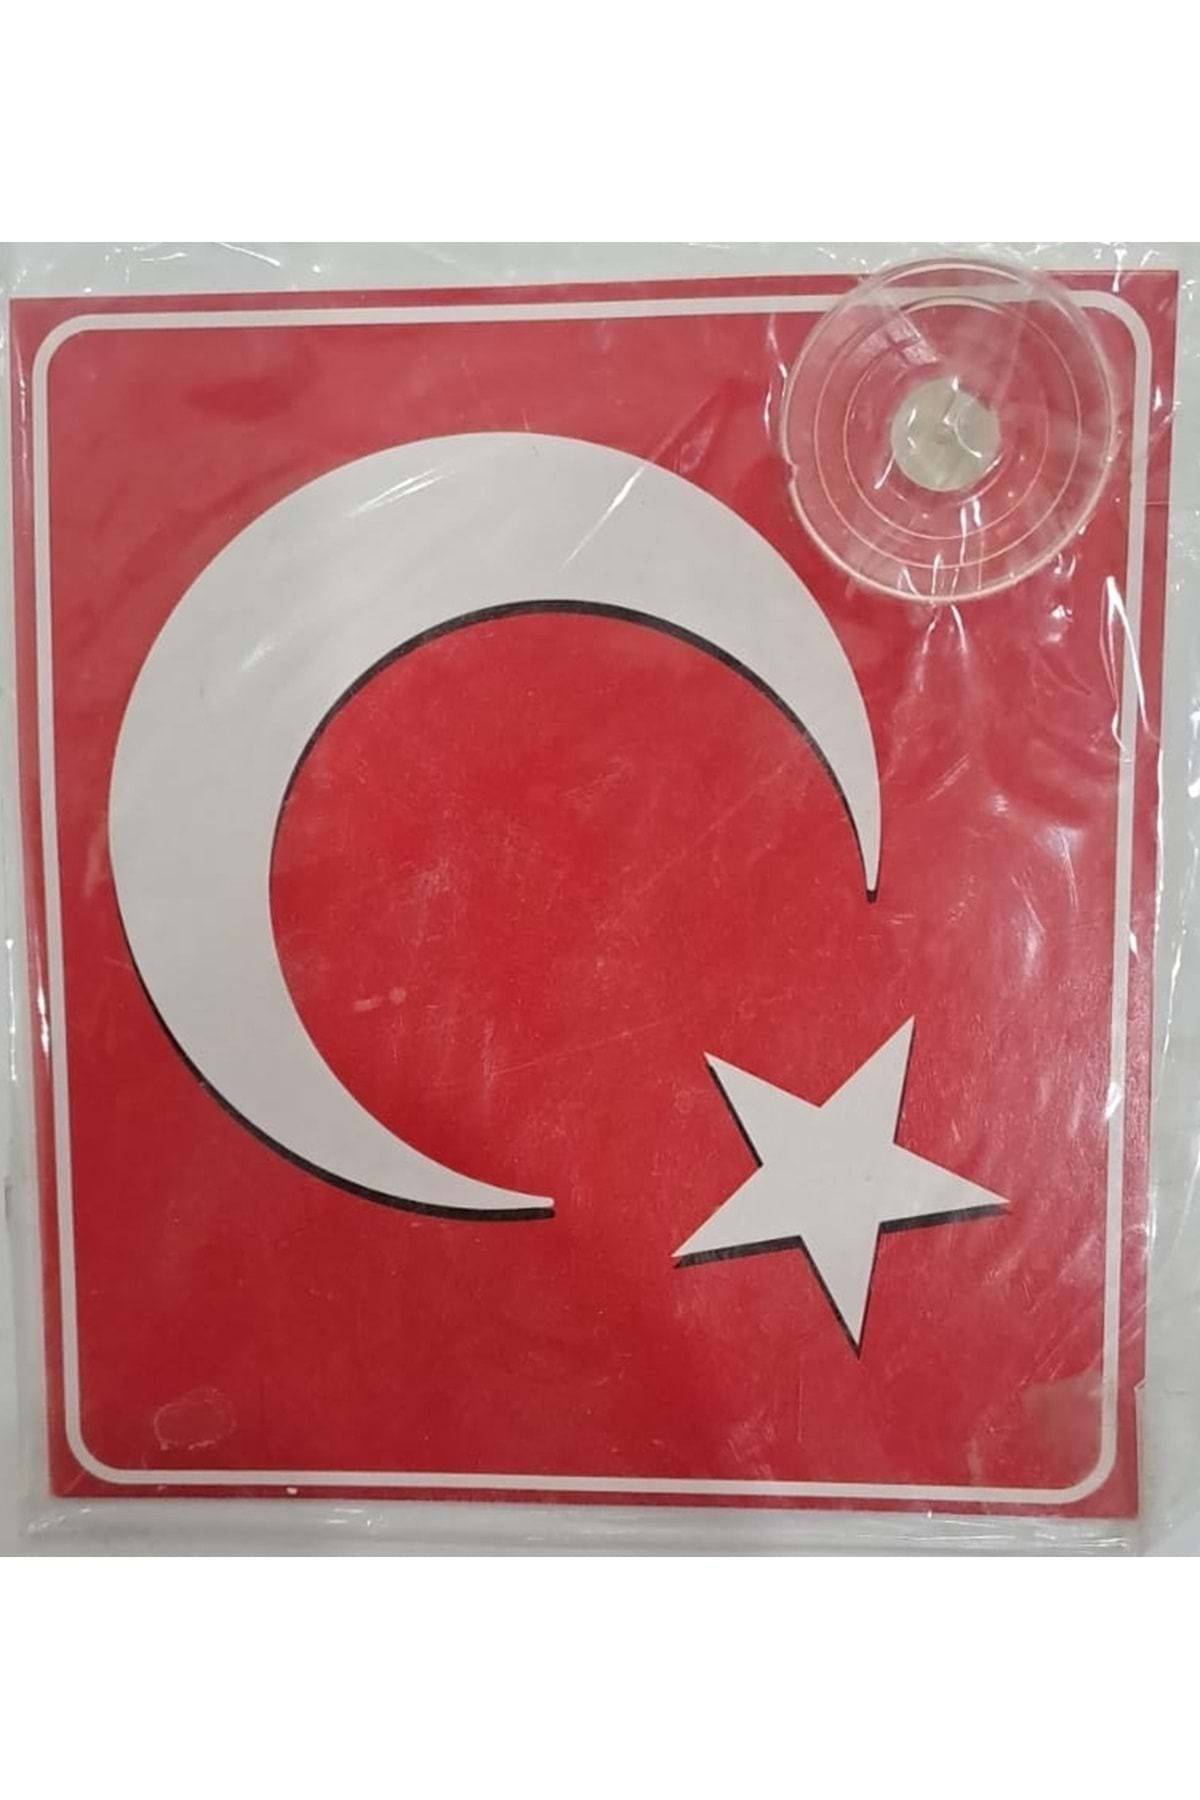 sticker ARABA YAZISI (STİCKER) VANTUZLU ( 11 x 11 cm ) TÜRK BAYRAĞI - AY YILDIZ